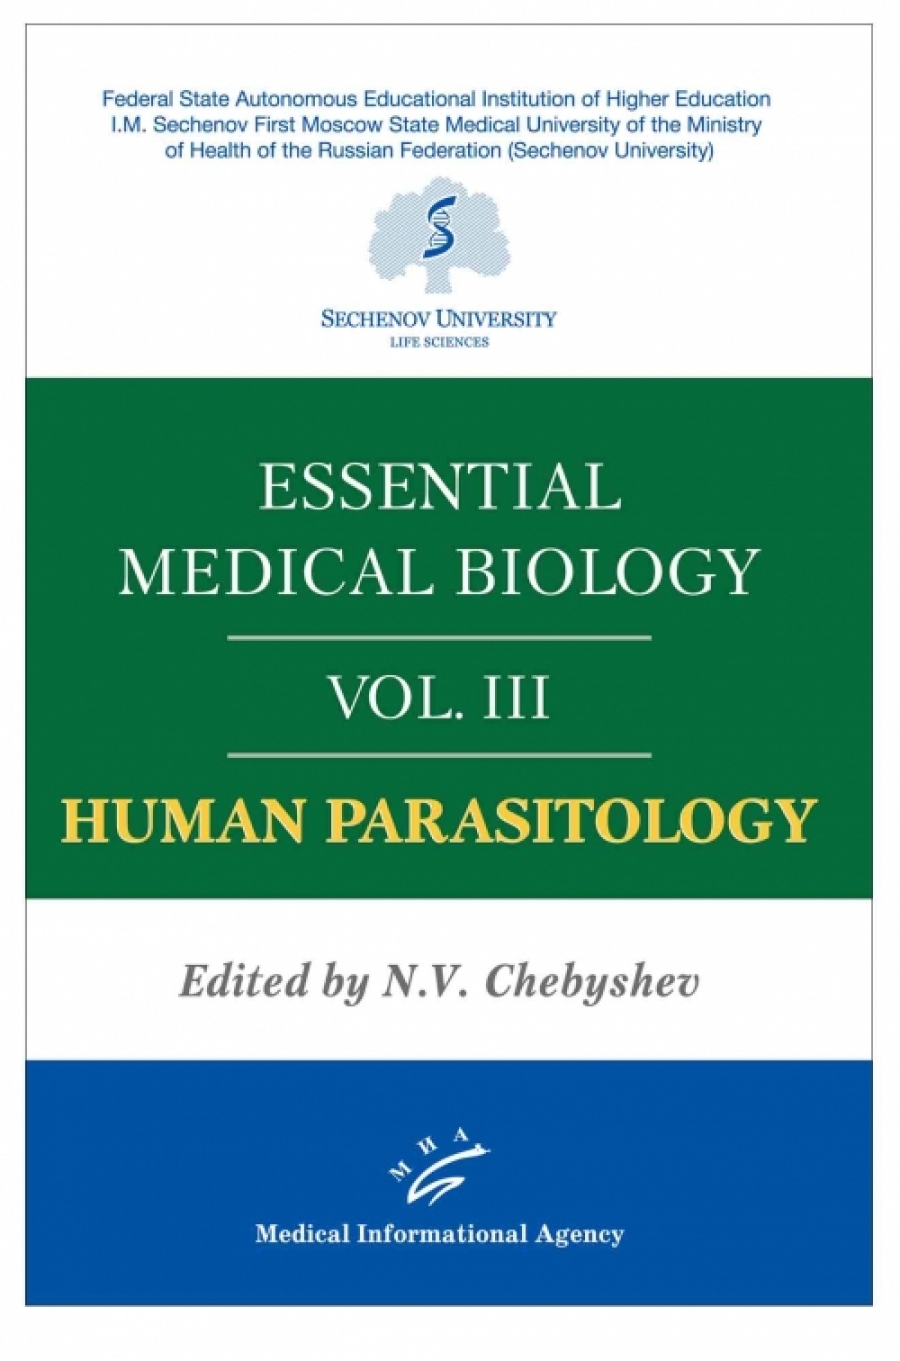 Чебышев Н.В. Essential medical biology. Vol. III. Human Parasitology 